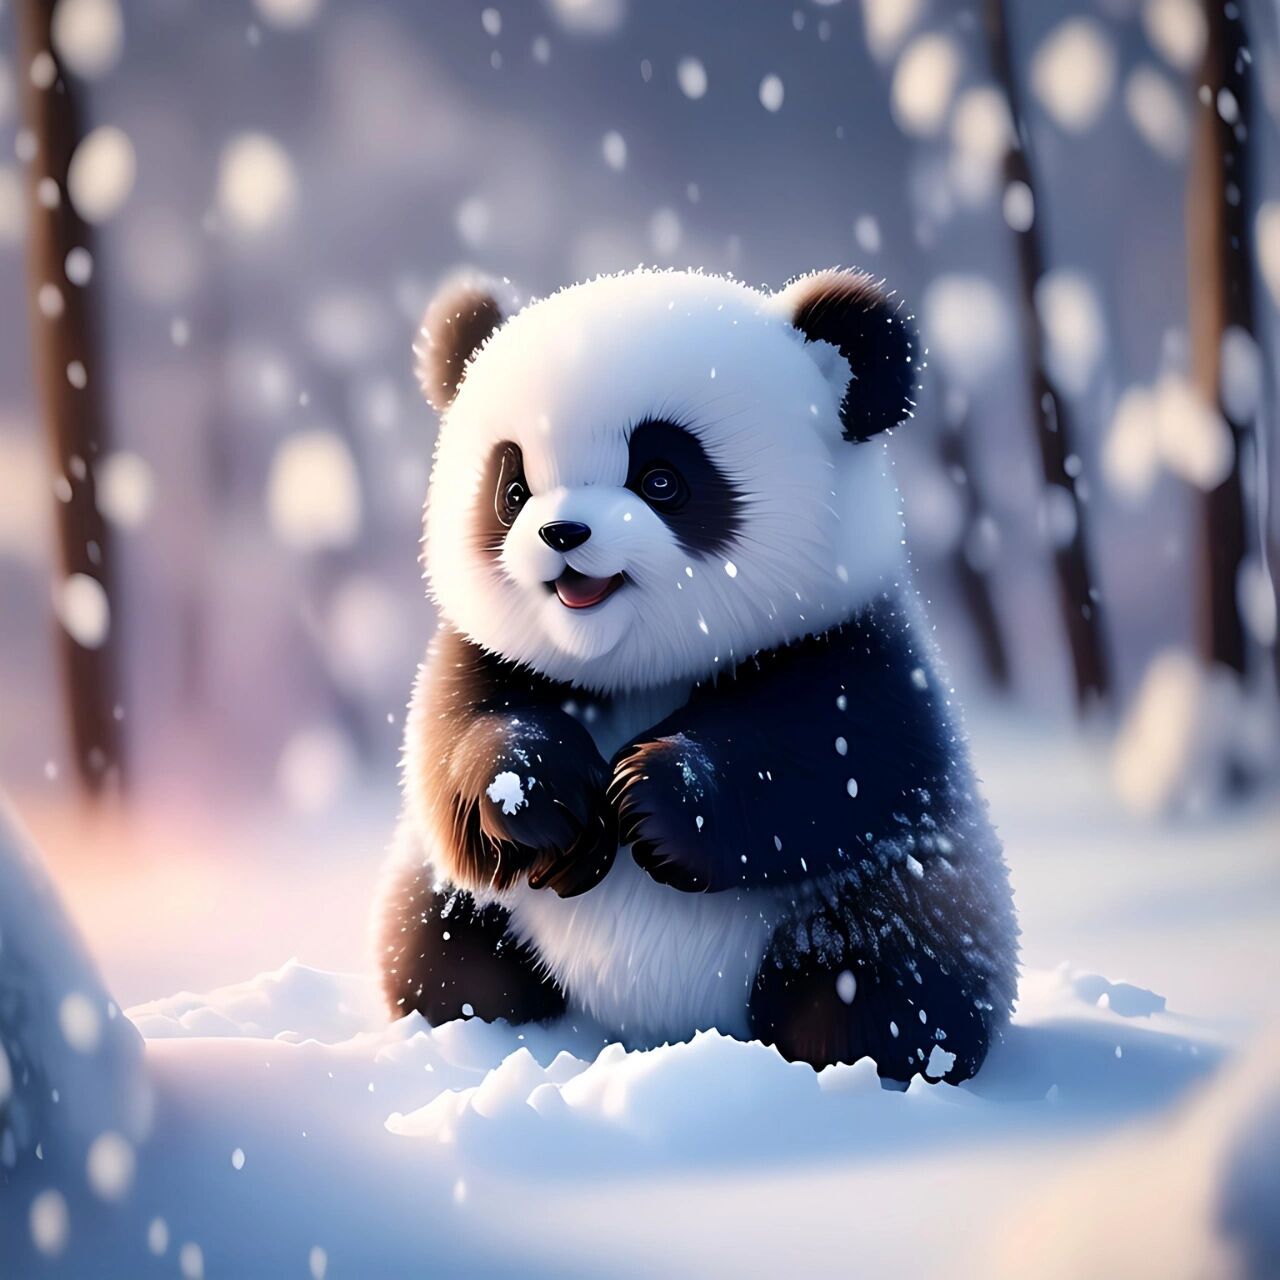 熊猫情头国宝图片